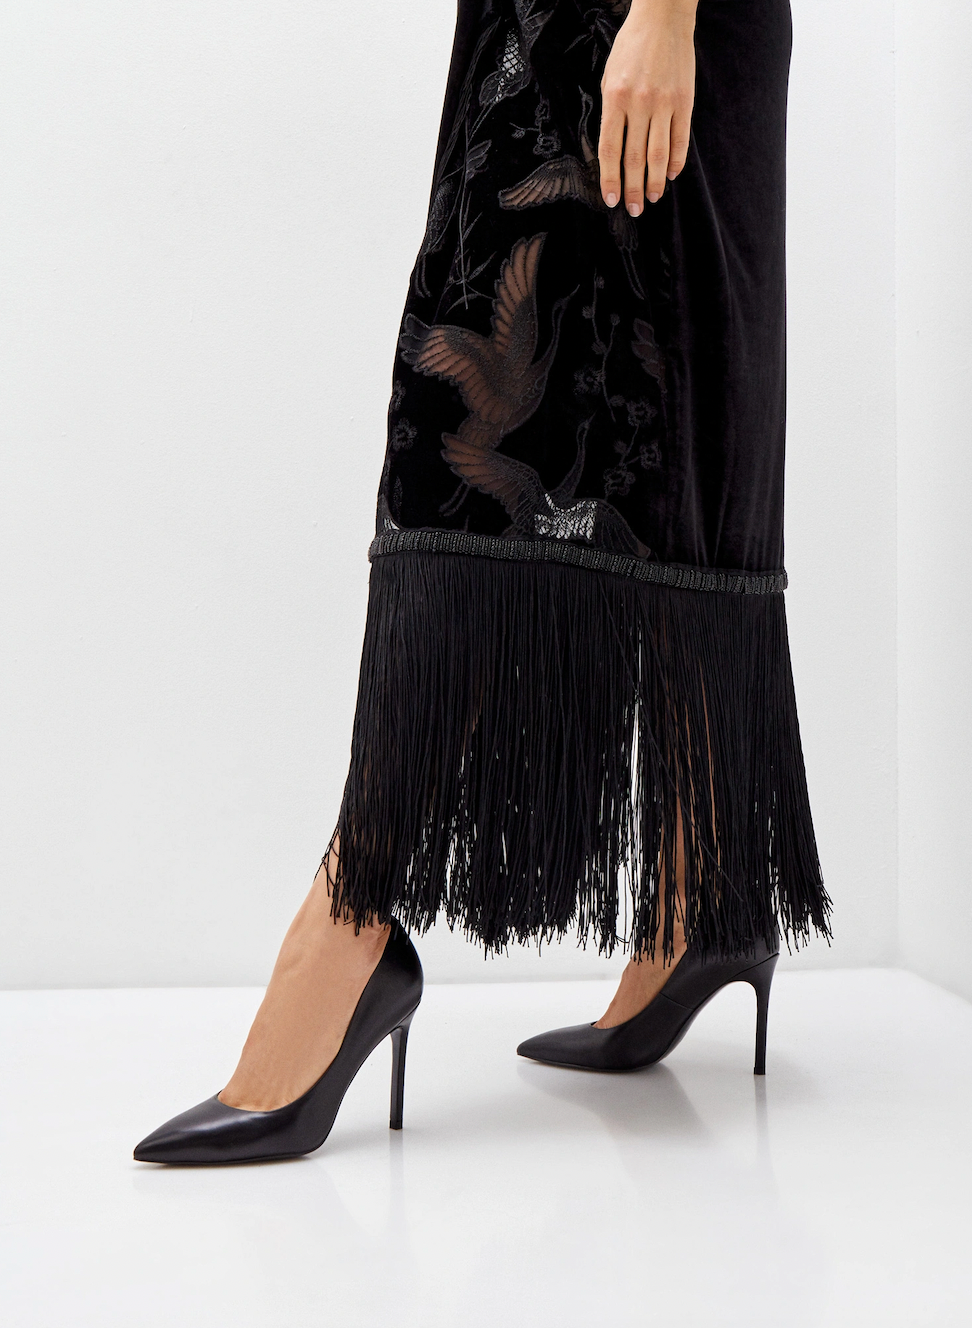 Образ Кэти Перрри в total black маленькое черное платье и туфли